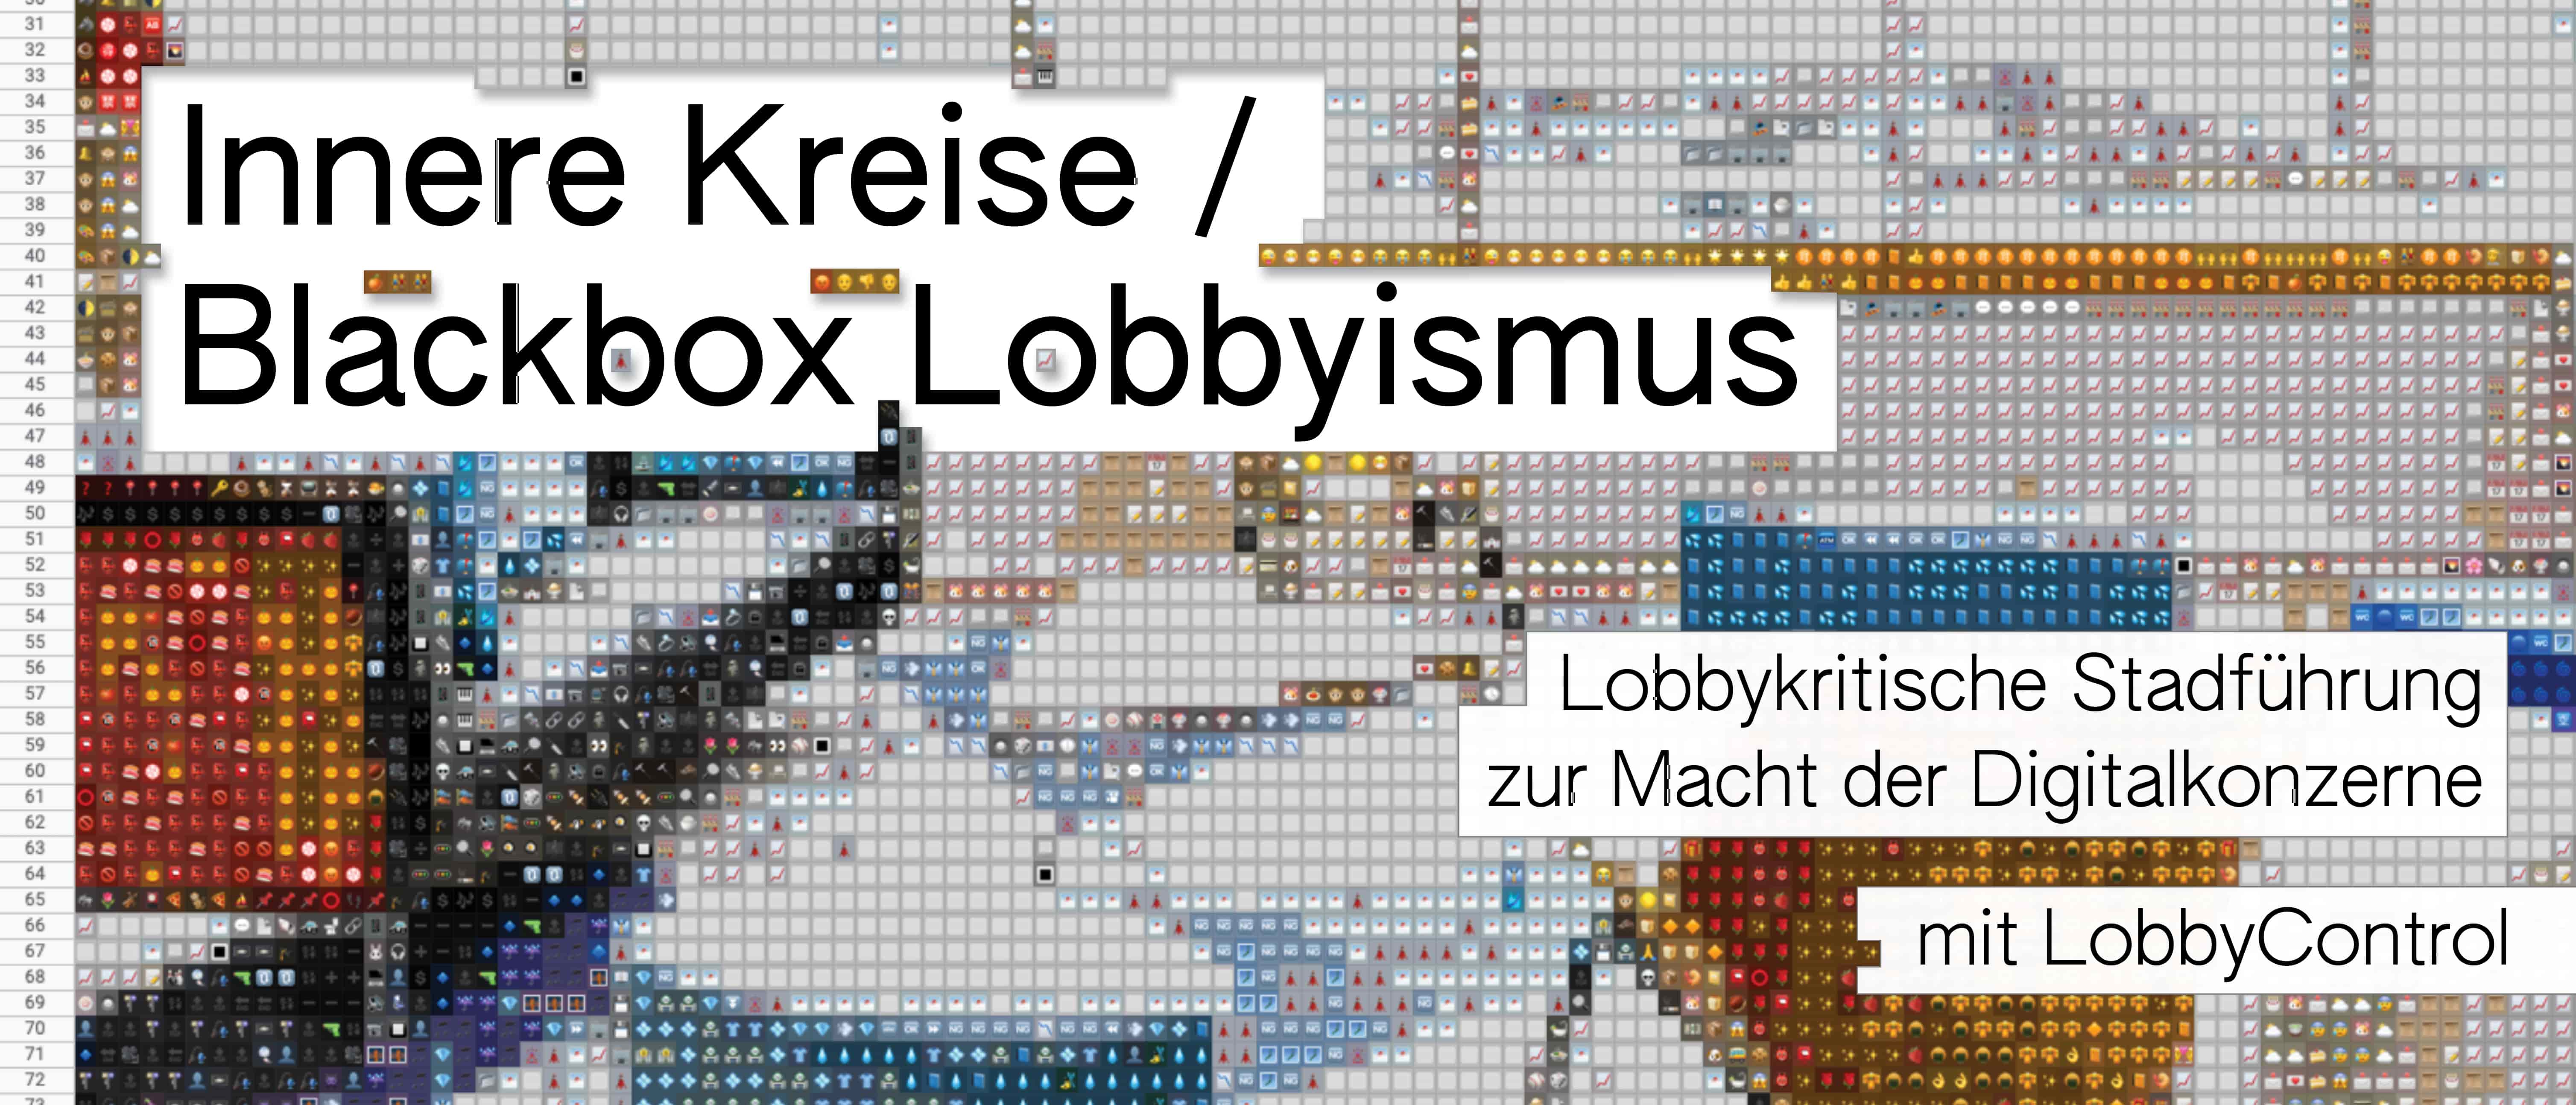 Innere Kreise / Blackbox Lobbyismus. Lobbykritische Stadtführung zur Macht der Digitalkonzerne mit LobbyControl